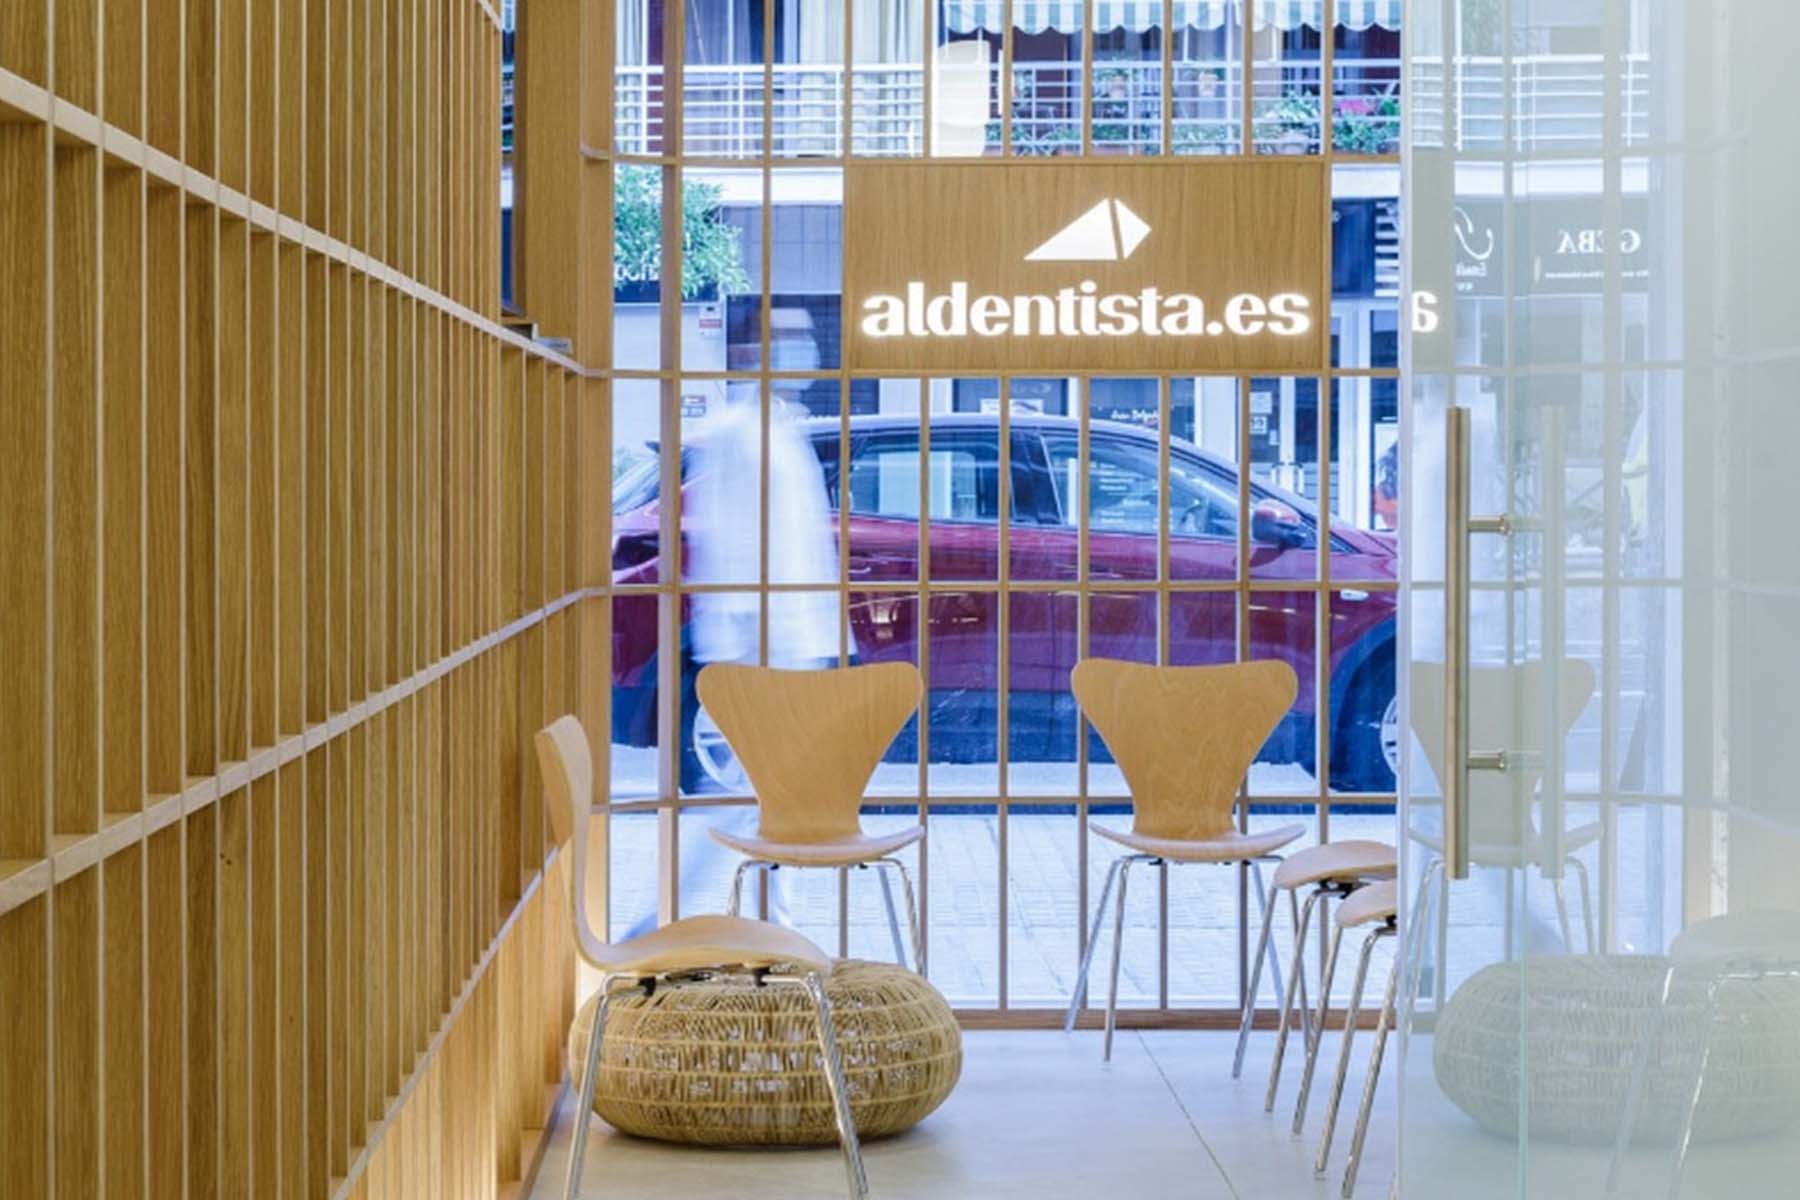 Aldentista.es premiada en los IV Premios Arquitectura y Sociedad 2021